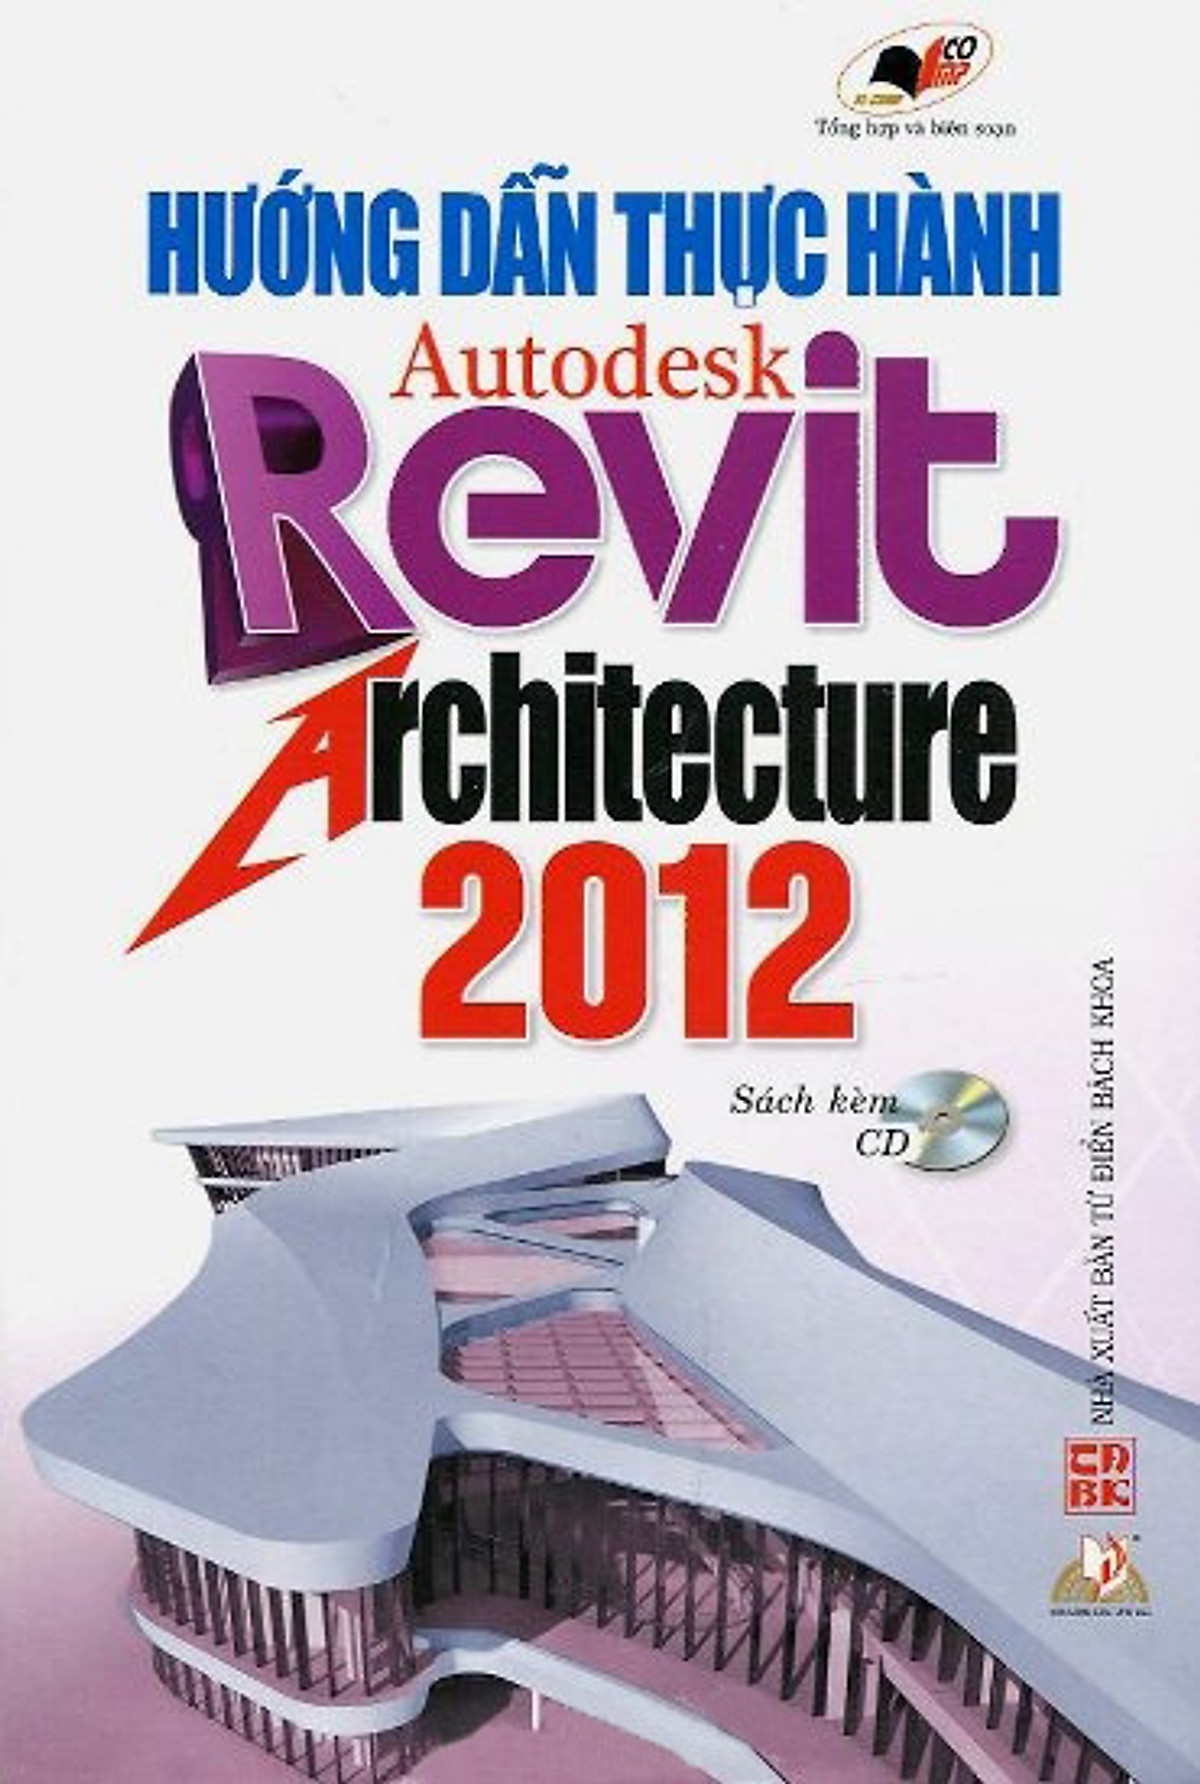 Hướng Dẫn Thực Hành Autodesk Revit Architecture 2012 (Sách Kèm CD) 